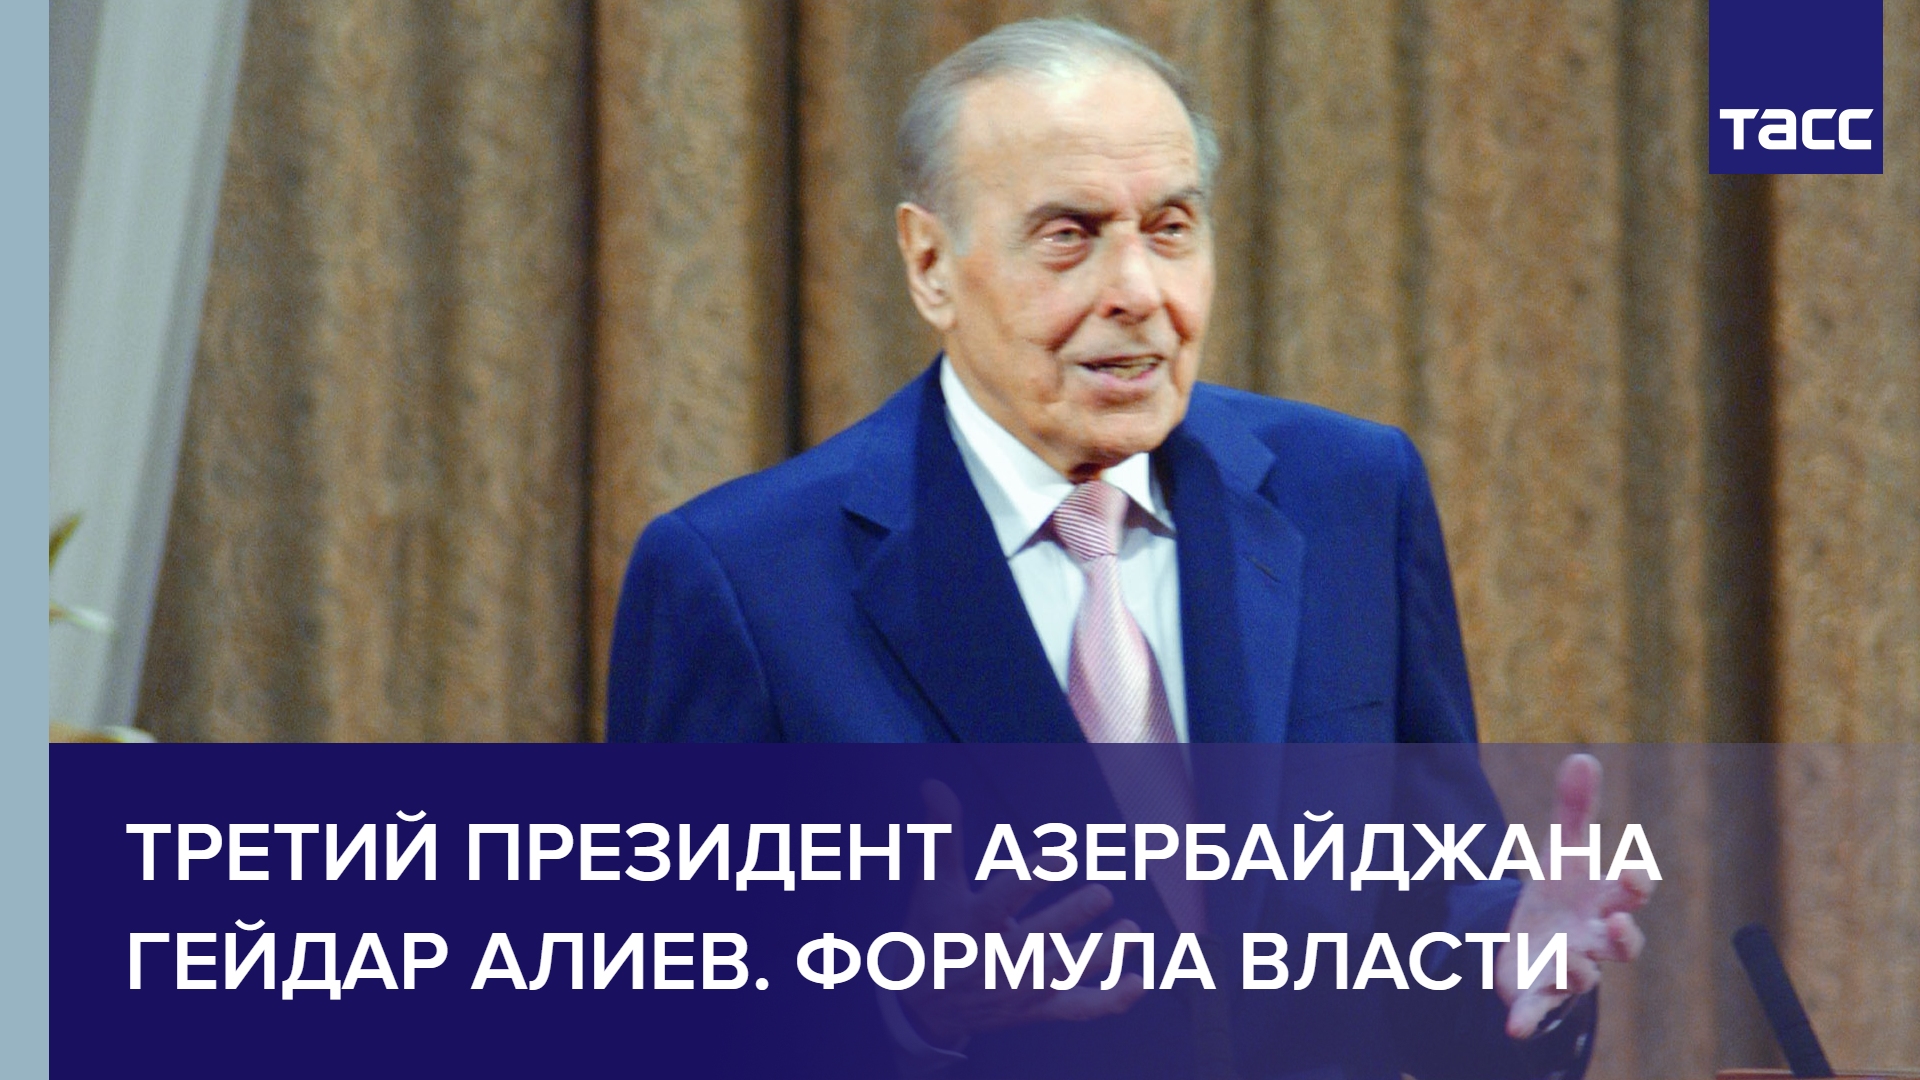 Третий президент Азербайджана Гейдар Алиев. Формула власти